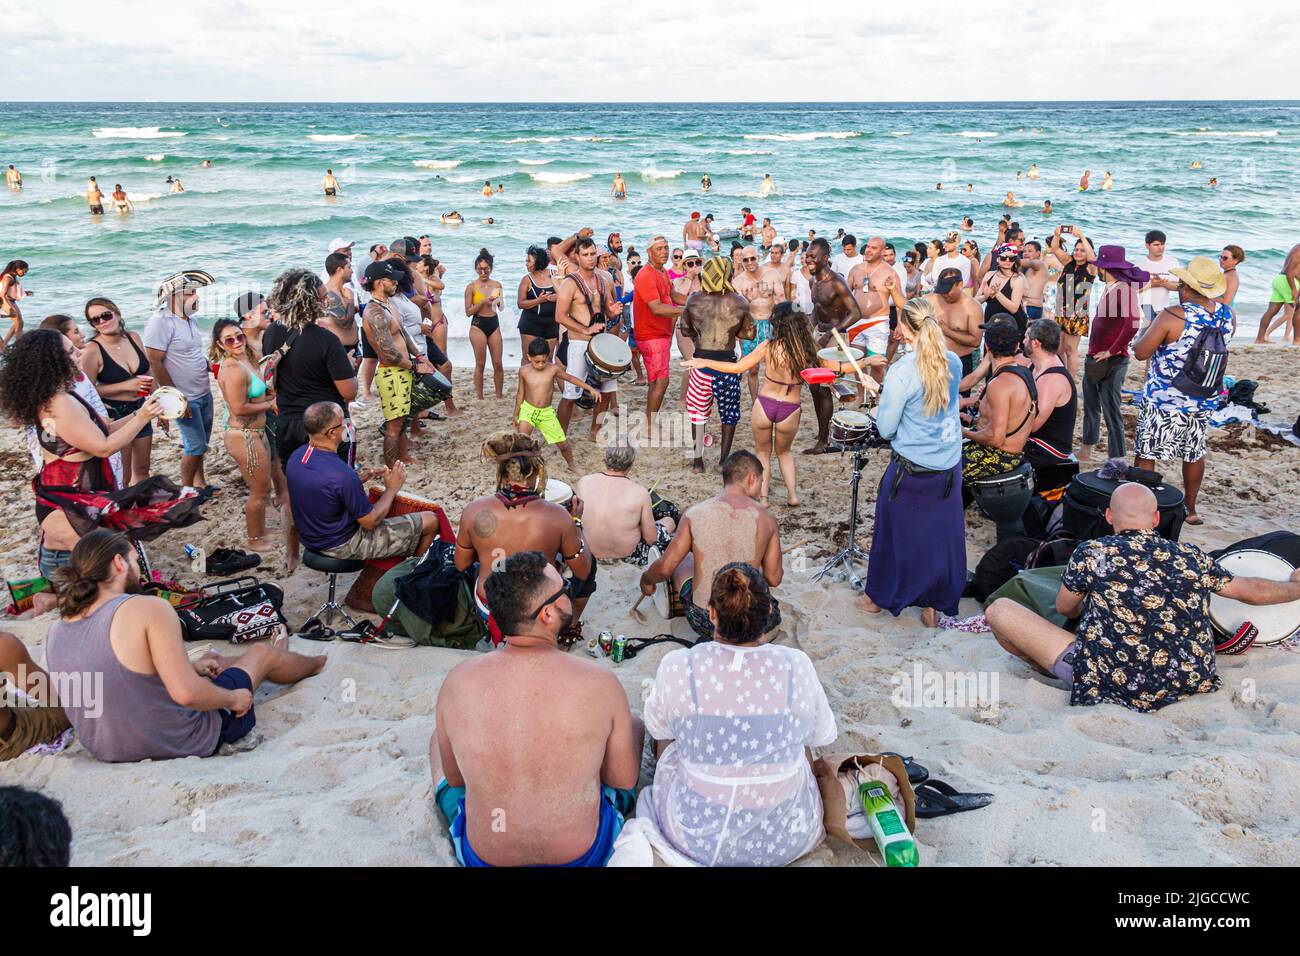 Miami Beach Florida, North Beach persone sunbashers ispanici uomini donne famiglie, Oceano Atlantico spiaggia pubblica drum cerchio ballerini ballare gente guardare Foto Stock